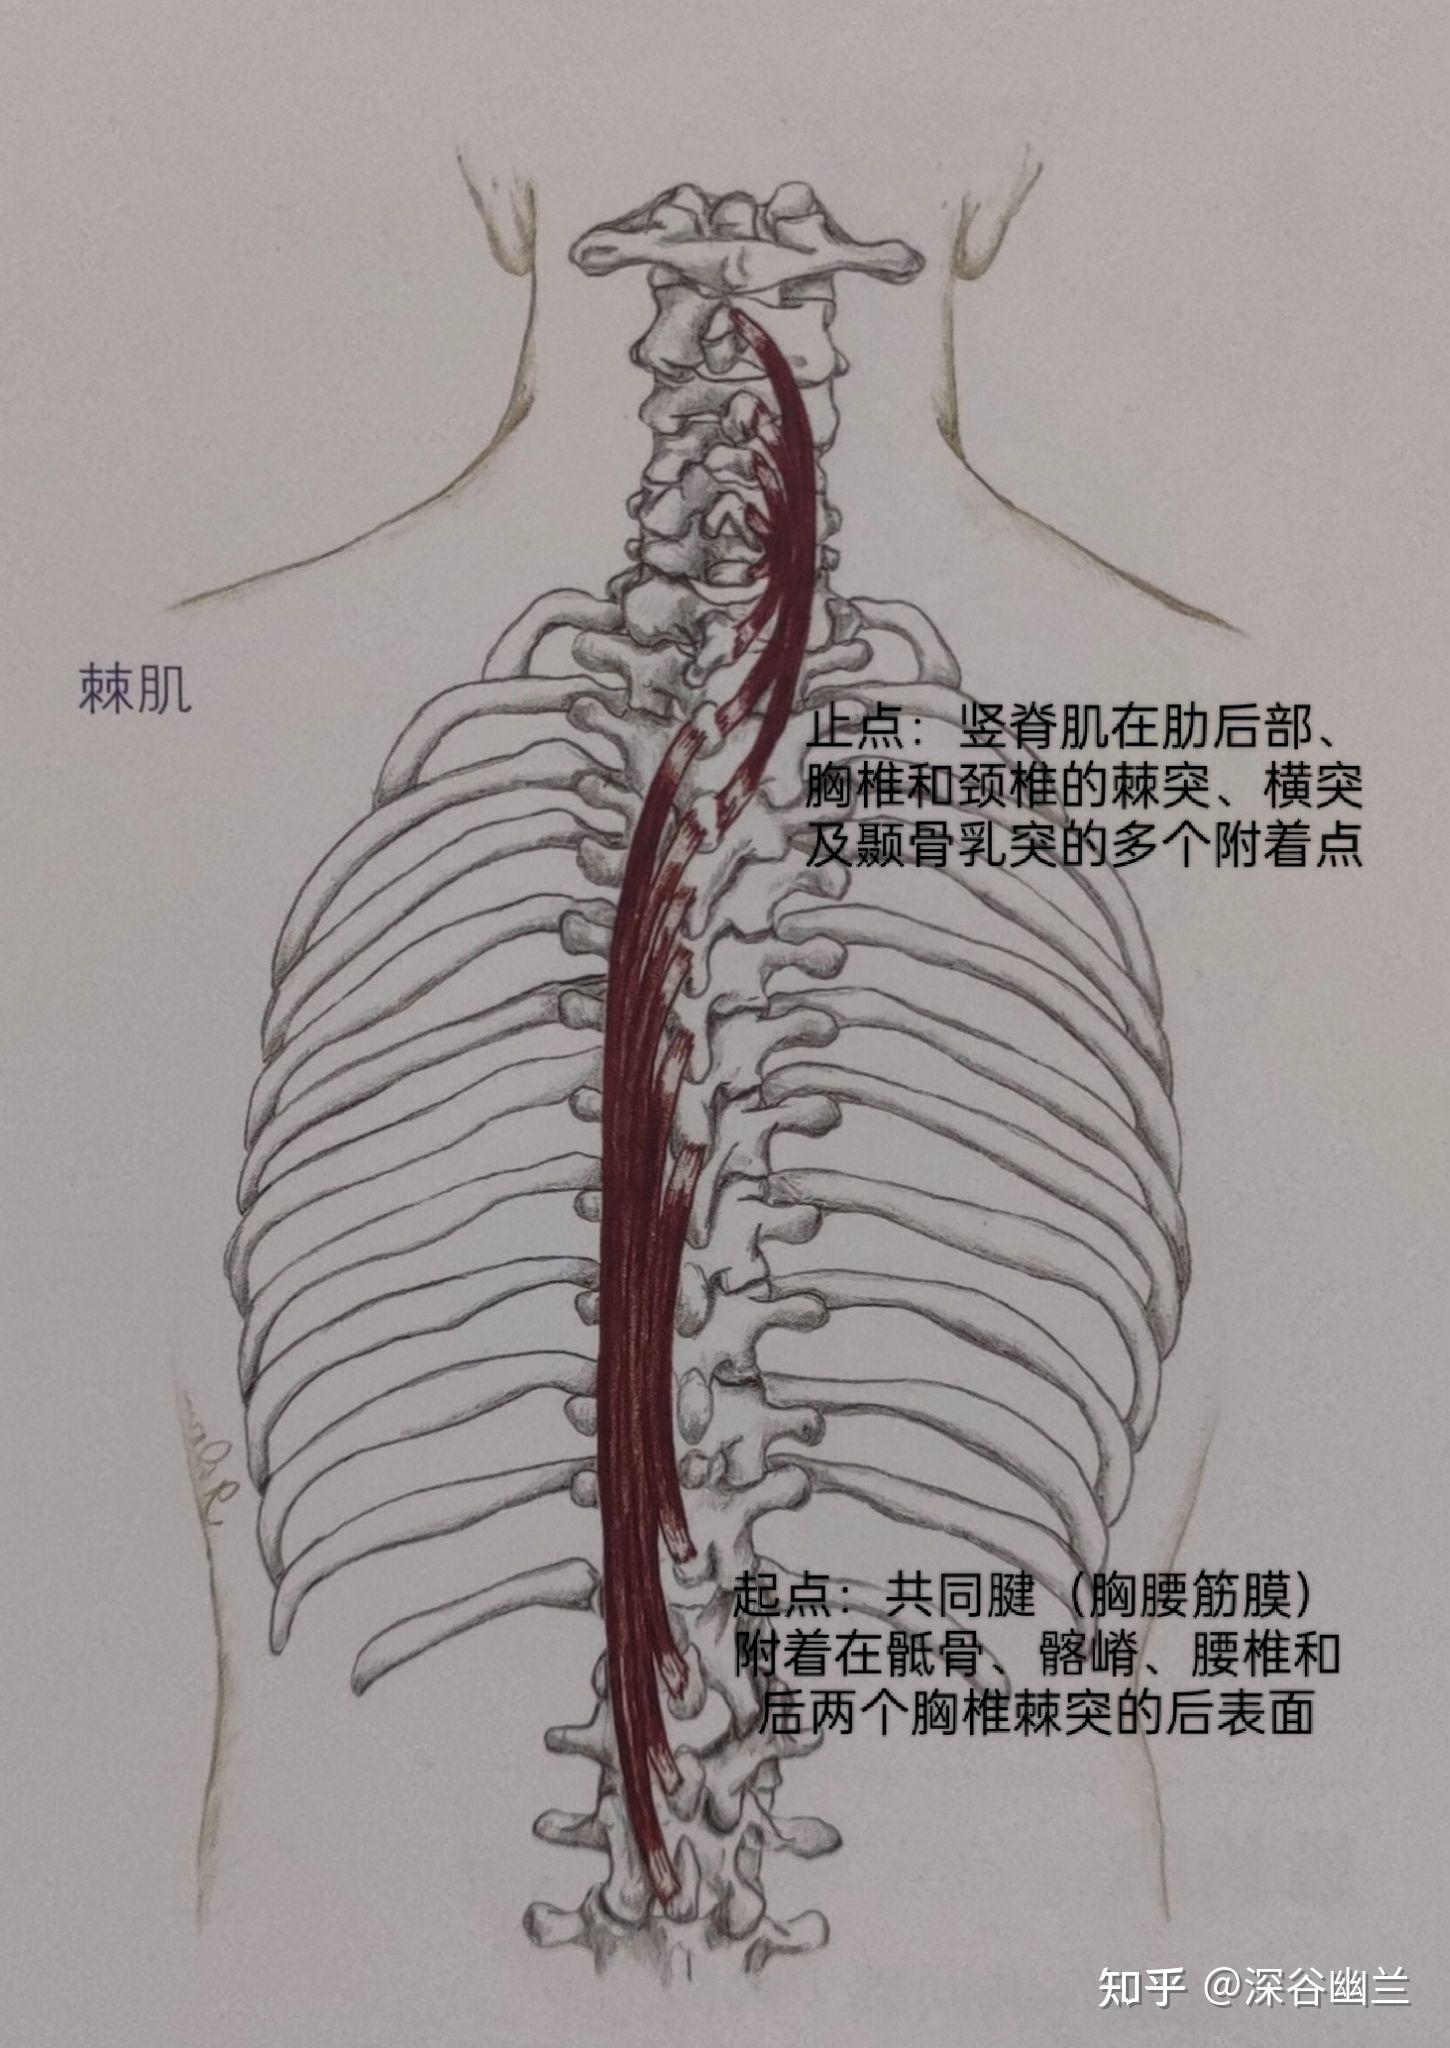 棘肌,头半棘肌,回旋肌,多裂肌,髂肋肌,使脊柱伸展的肌肉有:最长肌,髂